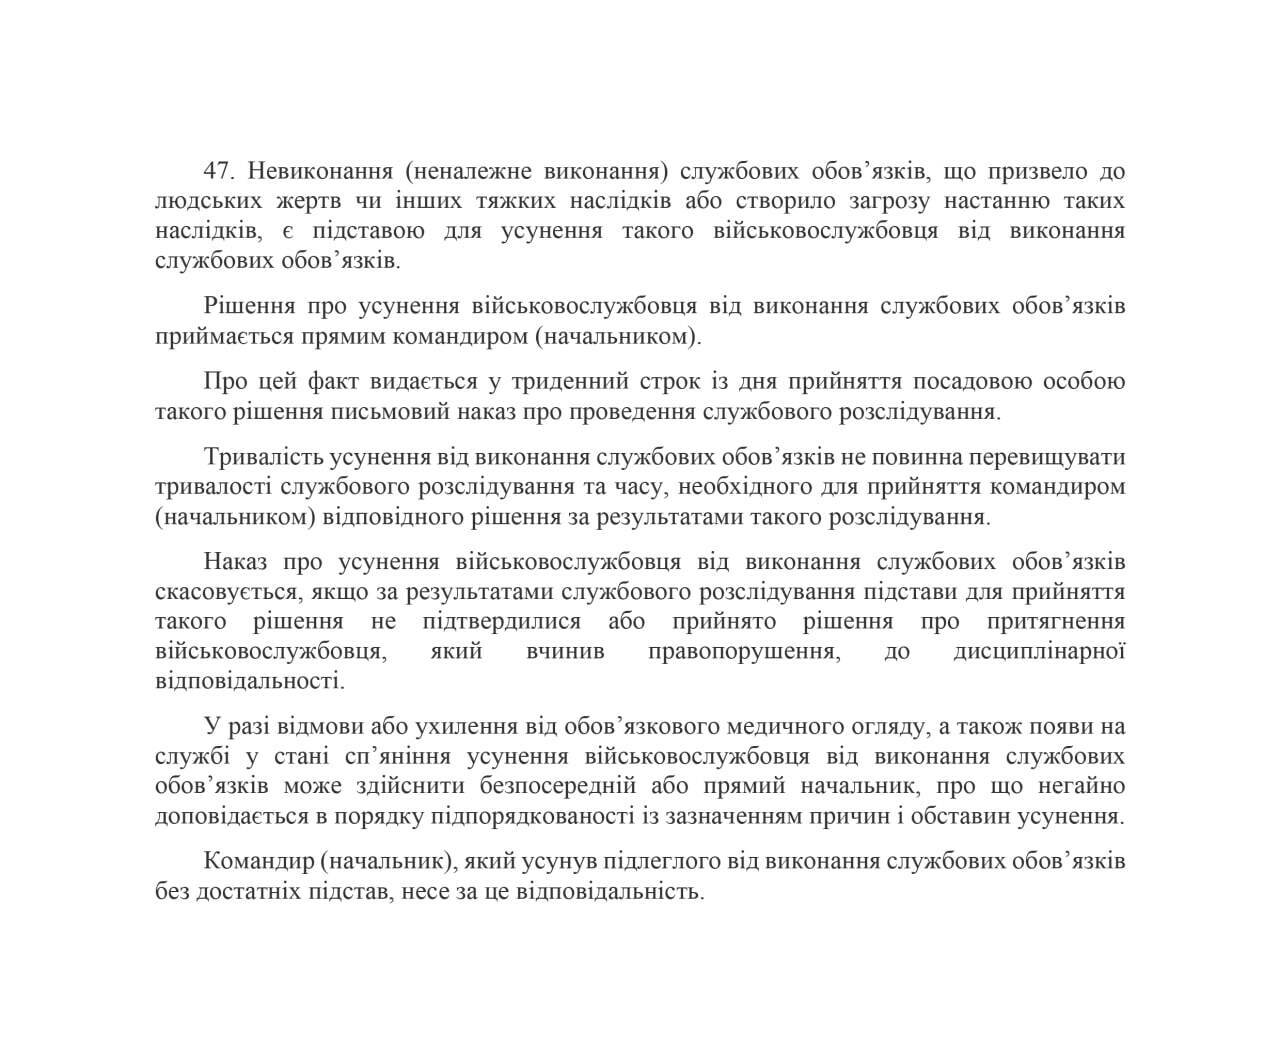 Стаття 47 Дисциплінарного статуту Збройних сил України.